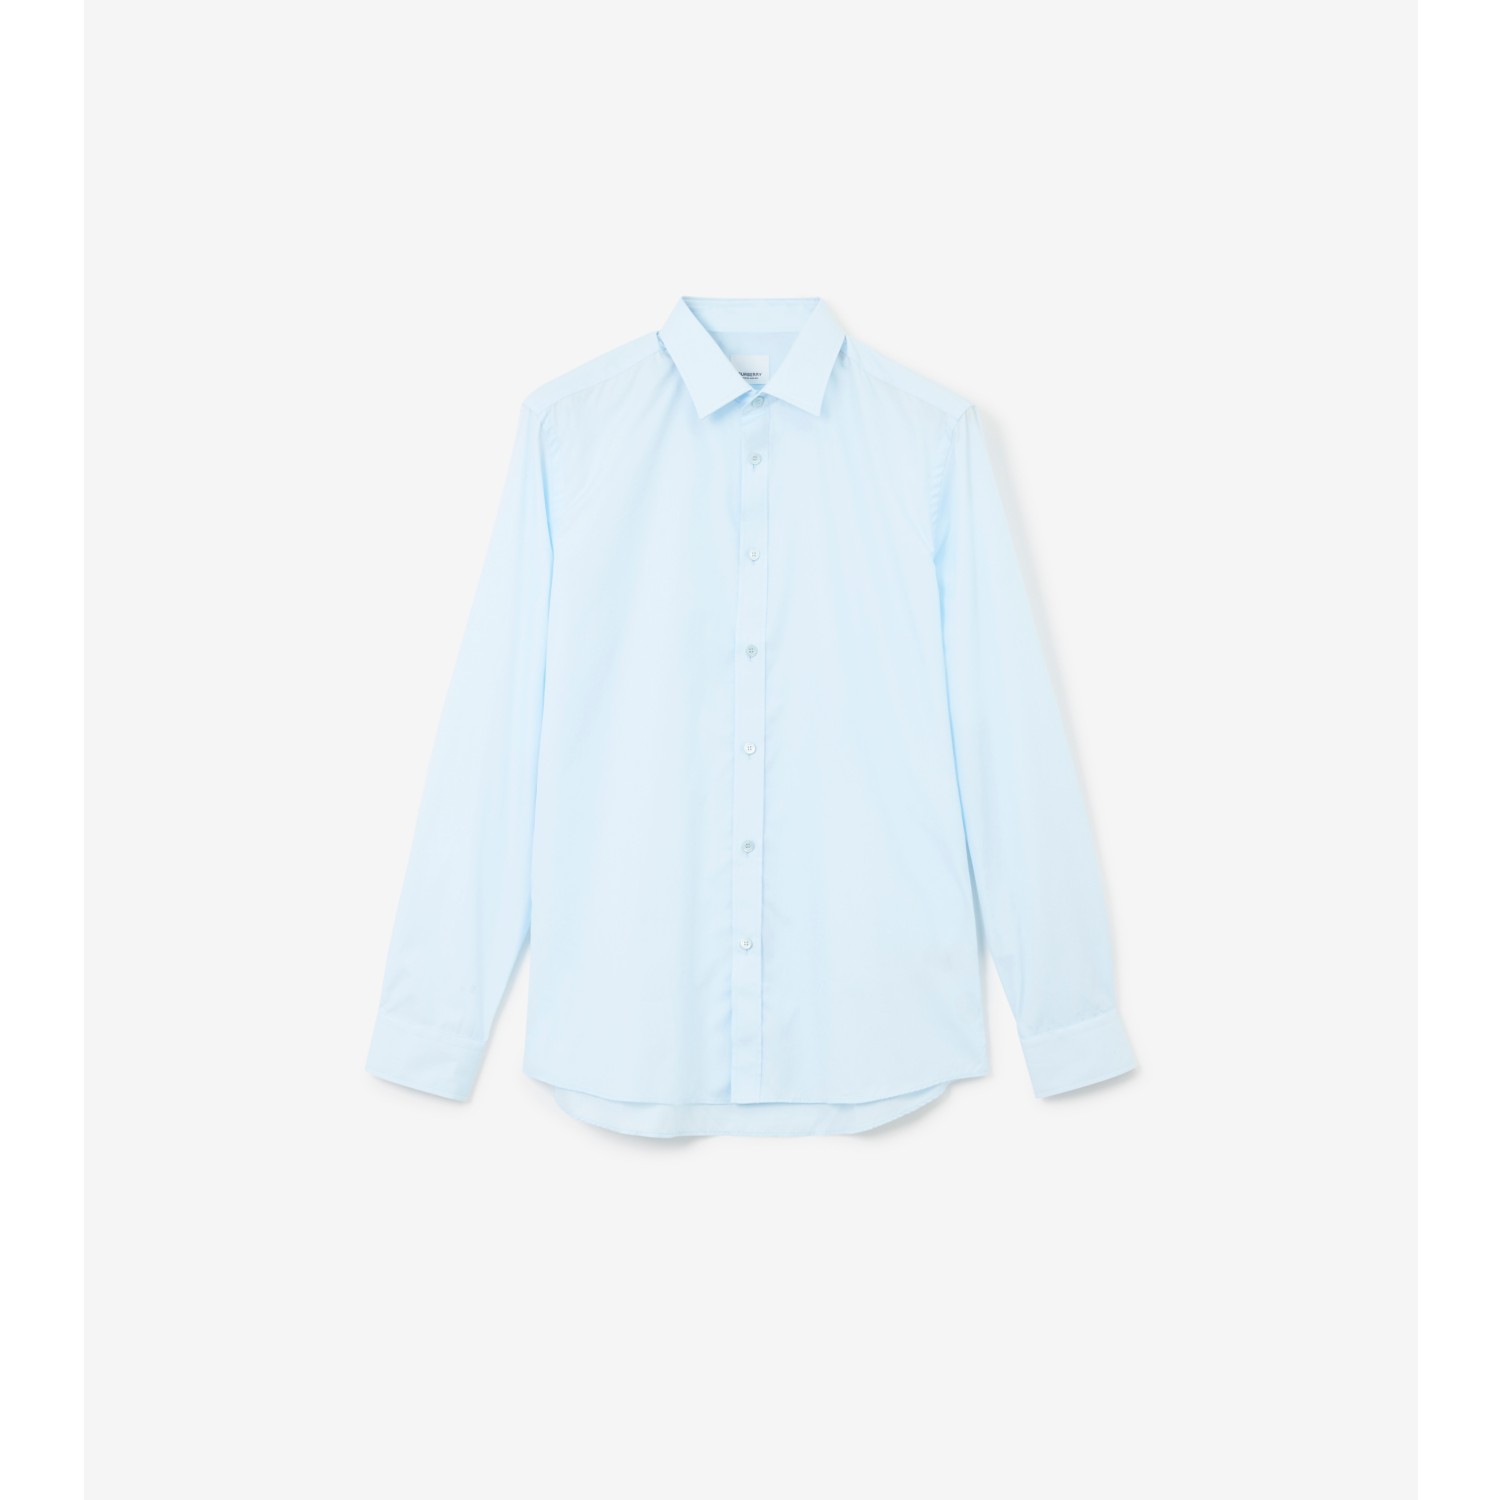 Burberry Monogram Motif Cotton T-shirt In Pale Blue